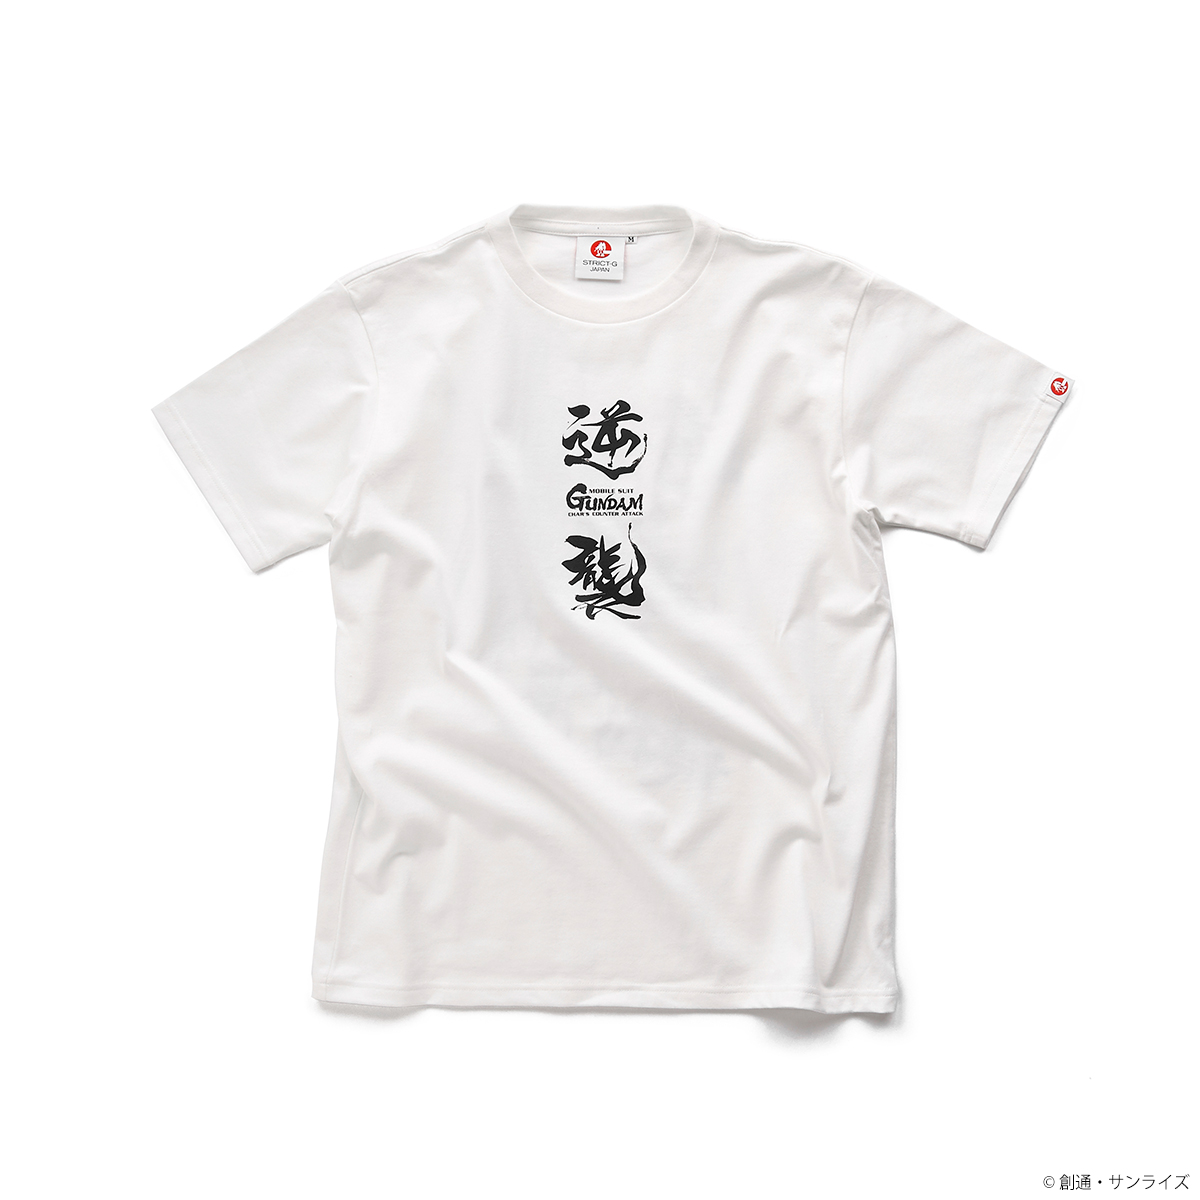 STRICT-G JAPAN『機動戦士ガンダム 逆襲のシャア』Tシャツ νガンダム柄